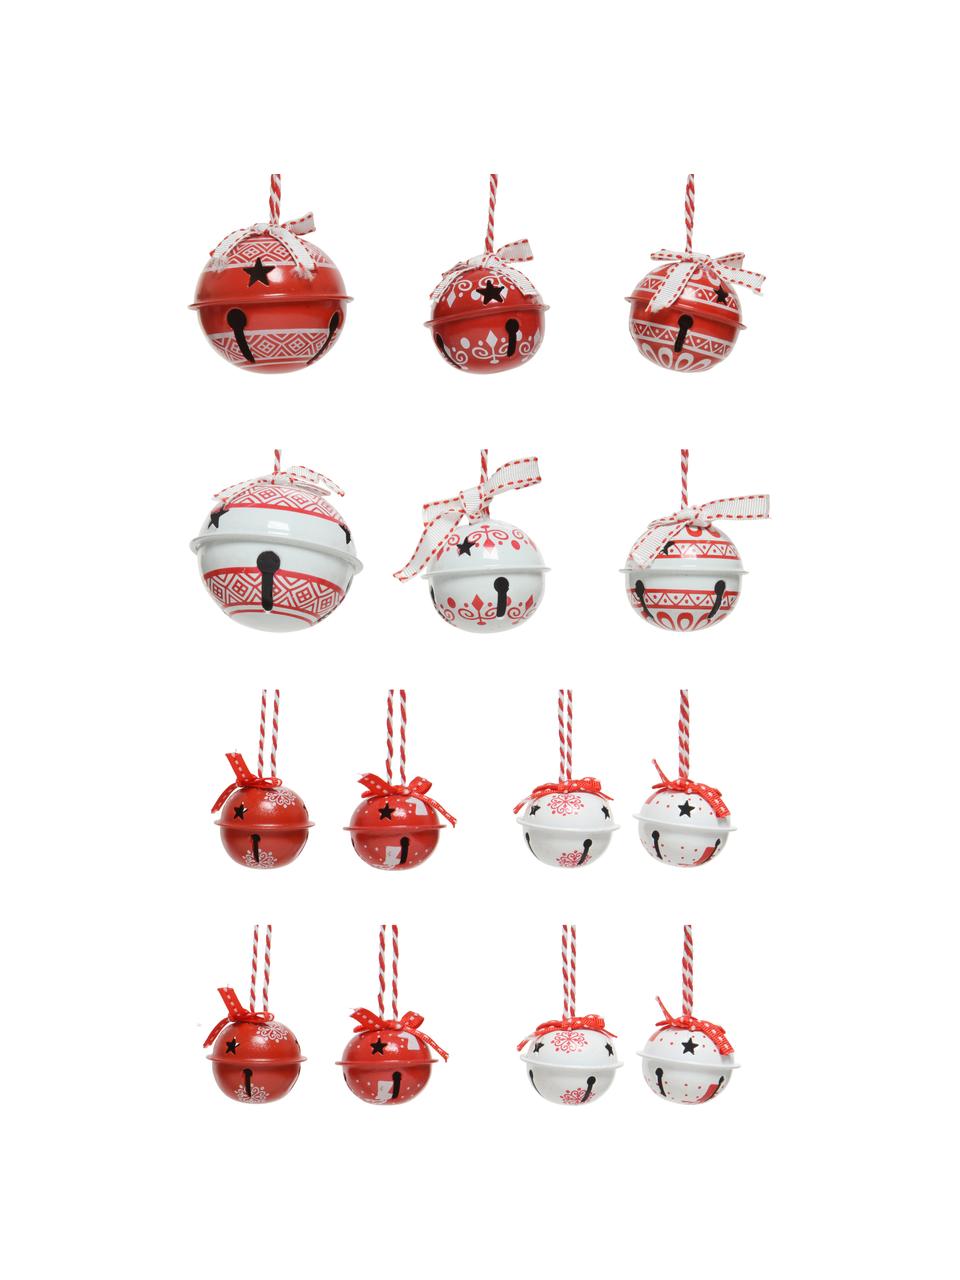 Baumanhänger-Set Glocken, 14 Stück, Rot, Weiß, Set mit verschiedenen Größen